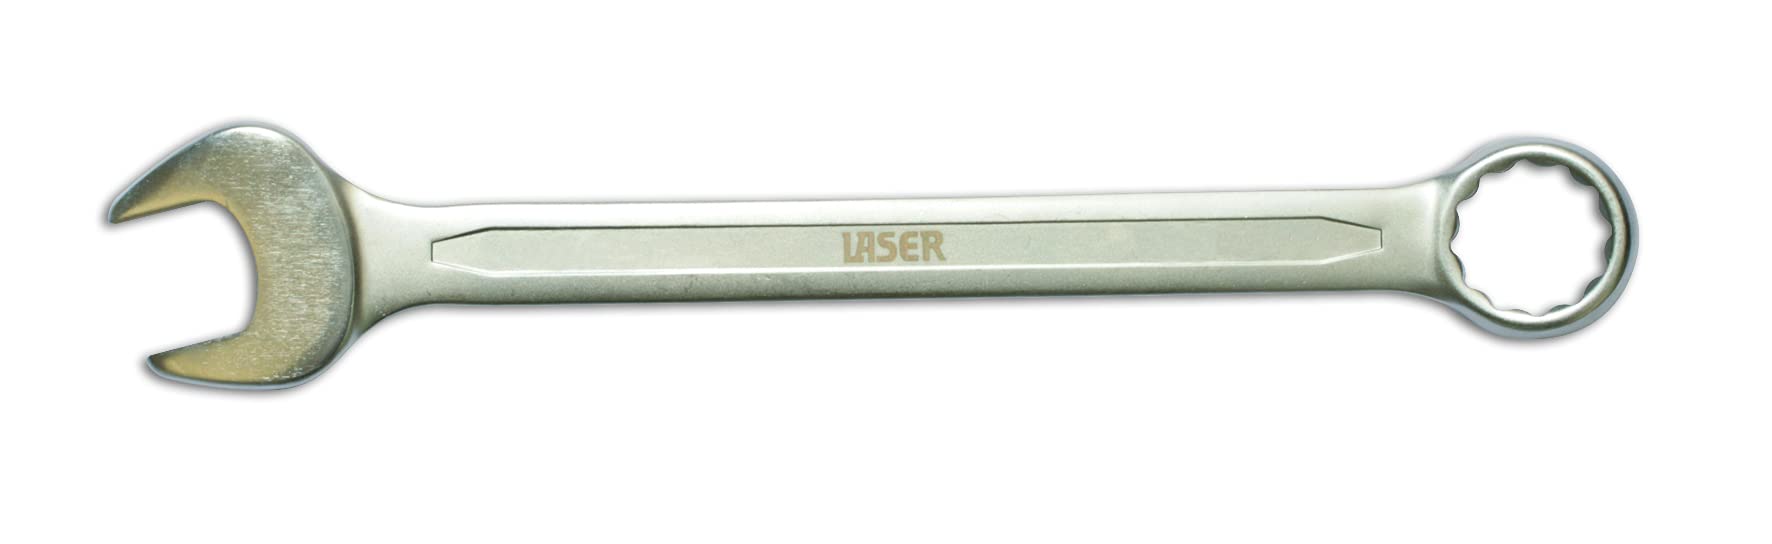 Laser 3069 3069 Kombinationsschlüssel - 21 mm von Laser